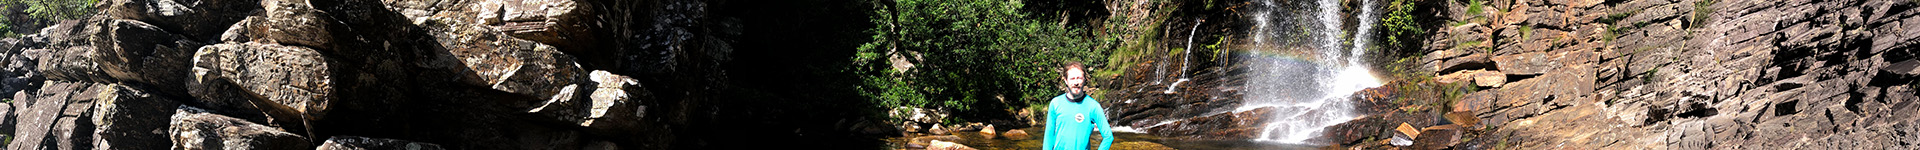 Cachoeira das Andorinhas - Serrá do Cipó, MG/Brasil